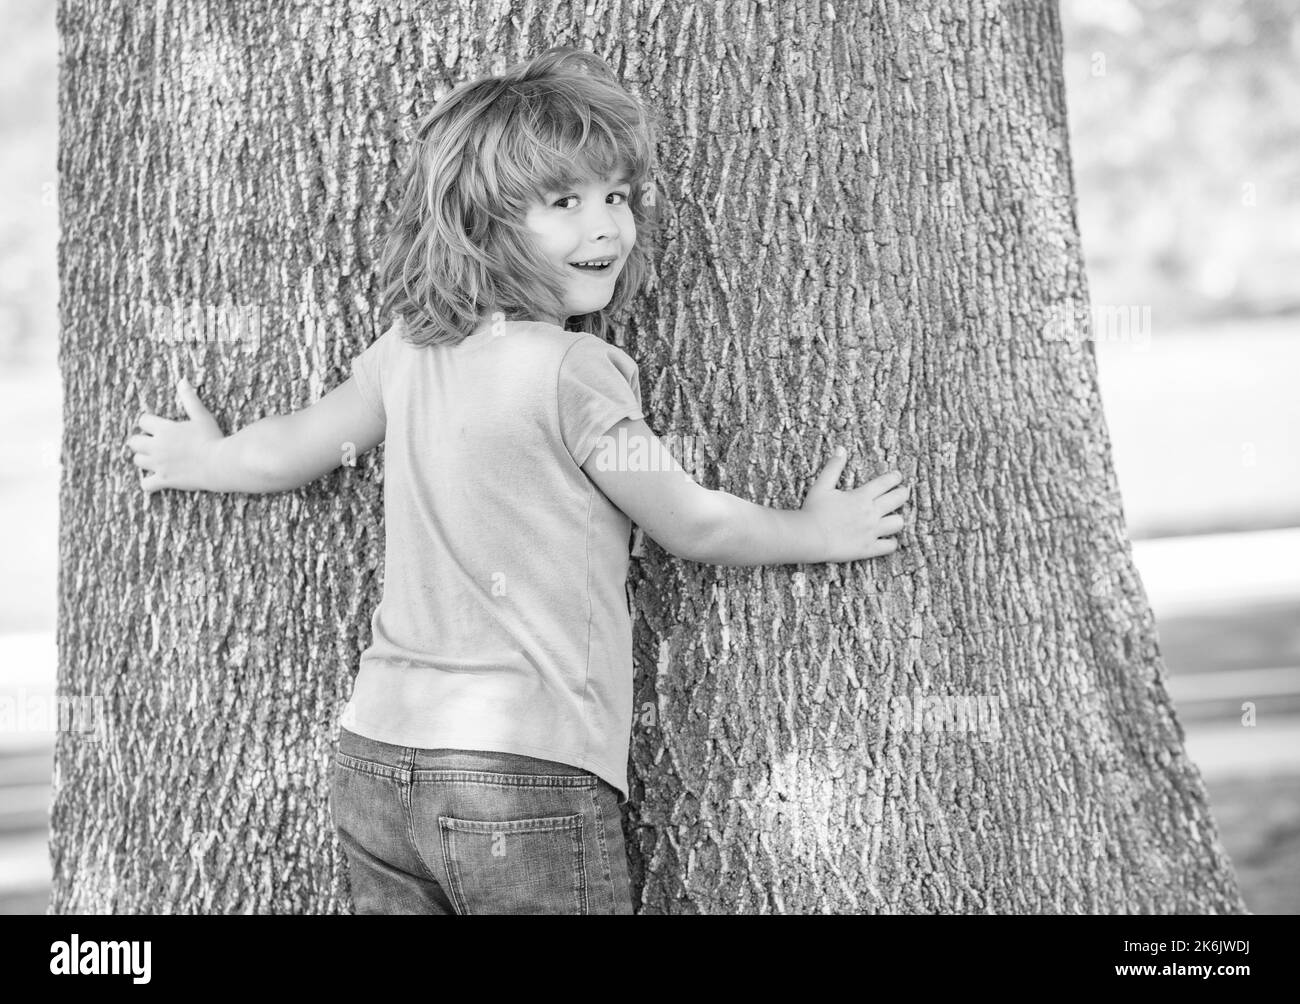 Il est si large. Garçon enfant essayer de grimper l'arbre. Enfance et enfance. Jours de boyHood. Escalade des arbres Banque D'Images